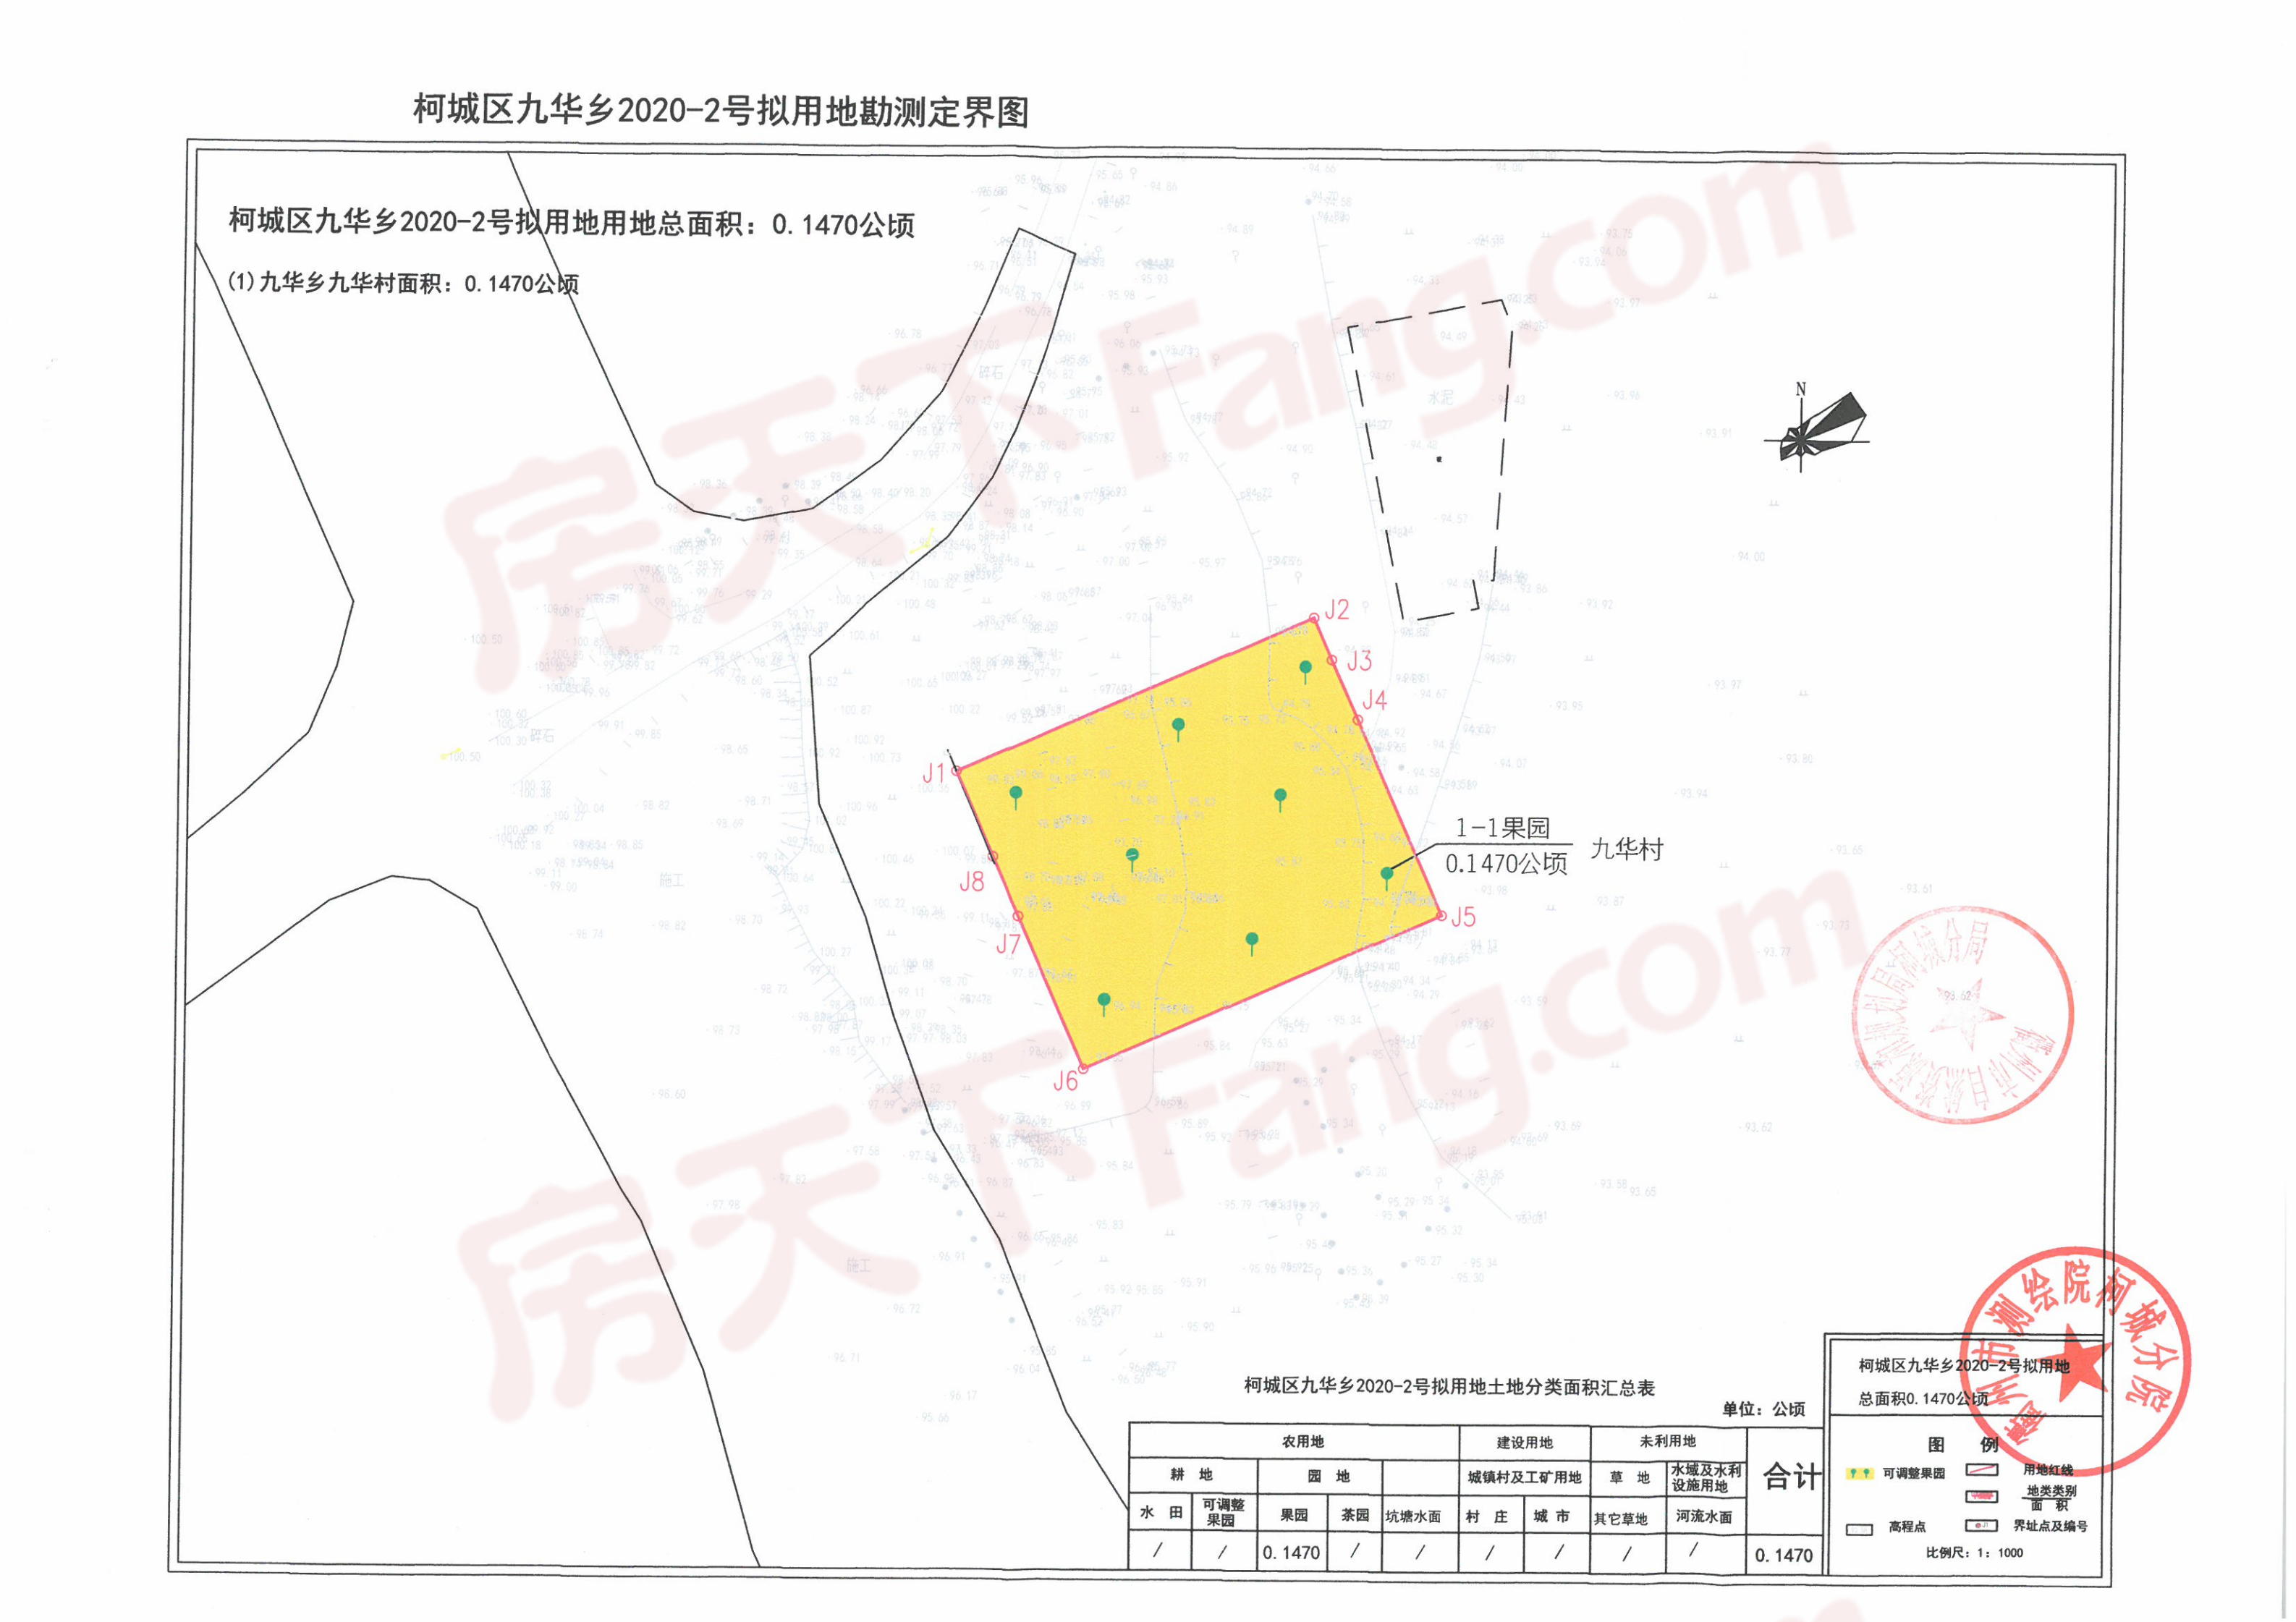 衢州市柯城区发布土地征收补偿公告，共建设20个项目